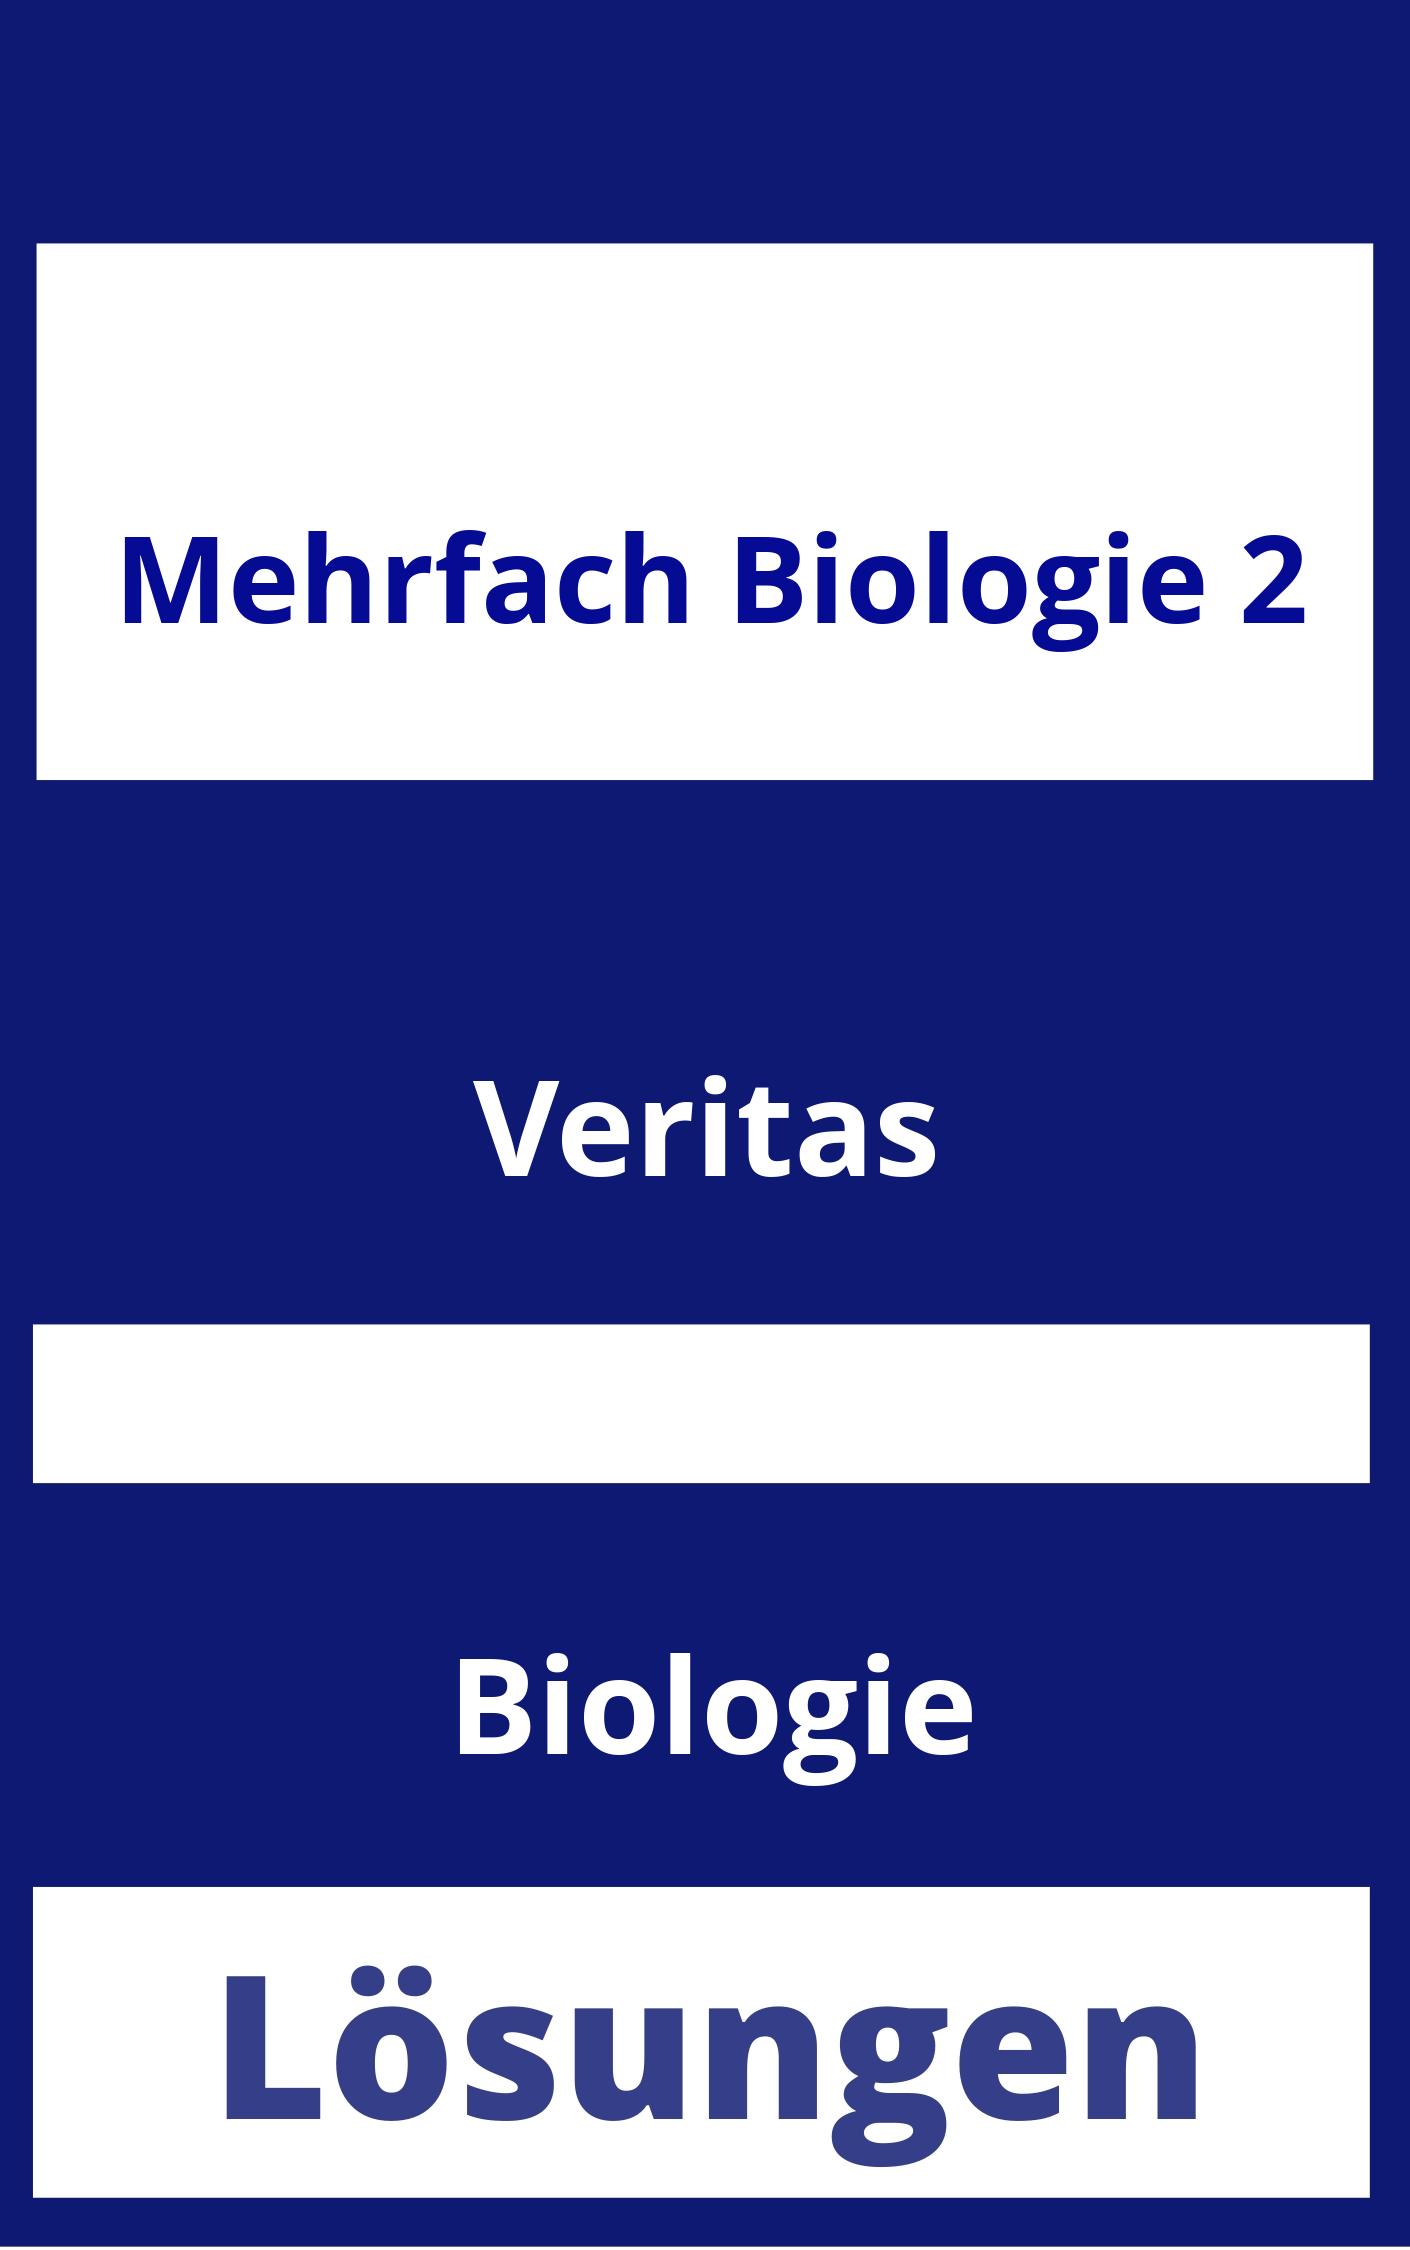 MEHRfach Biologie 2